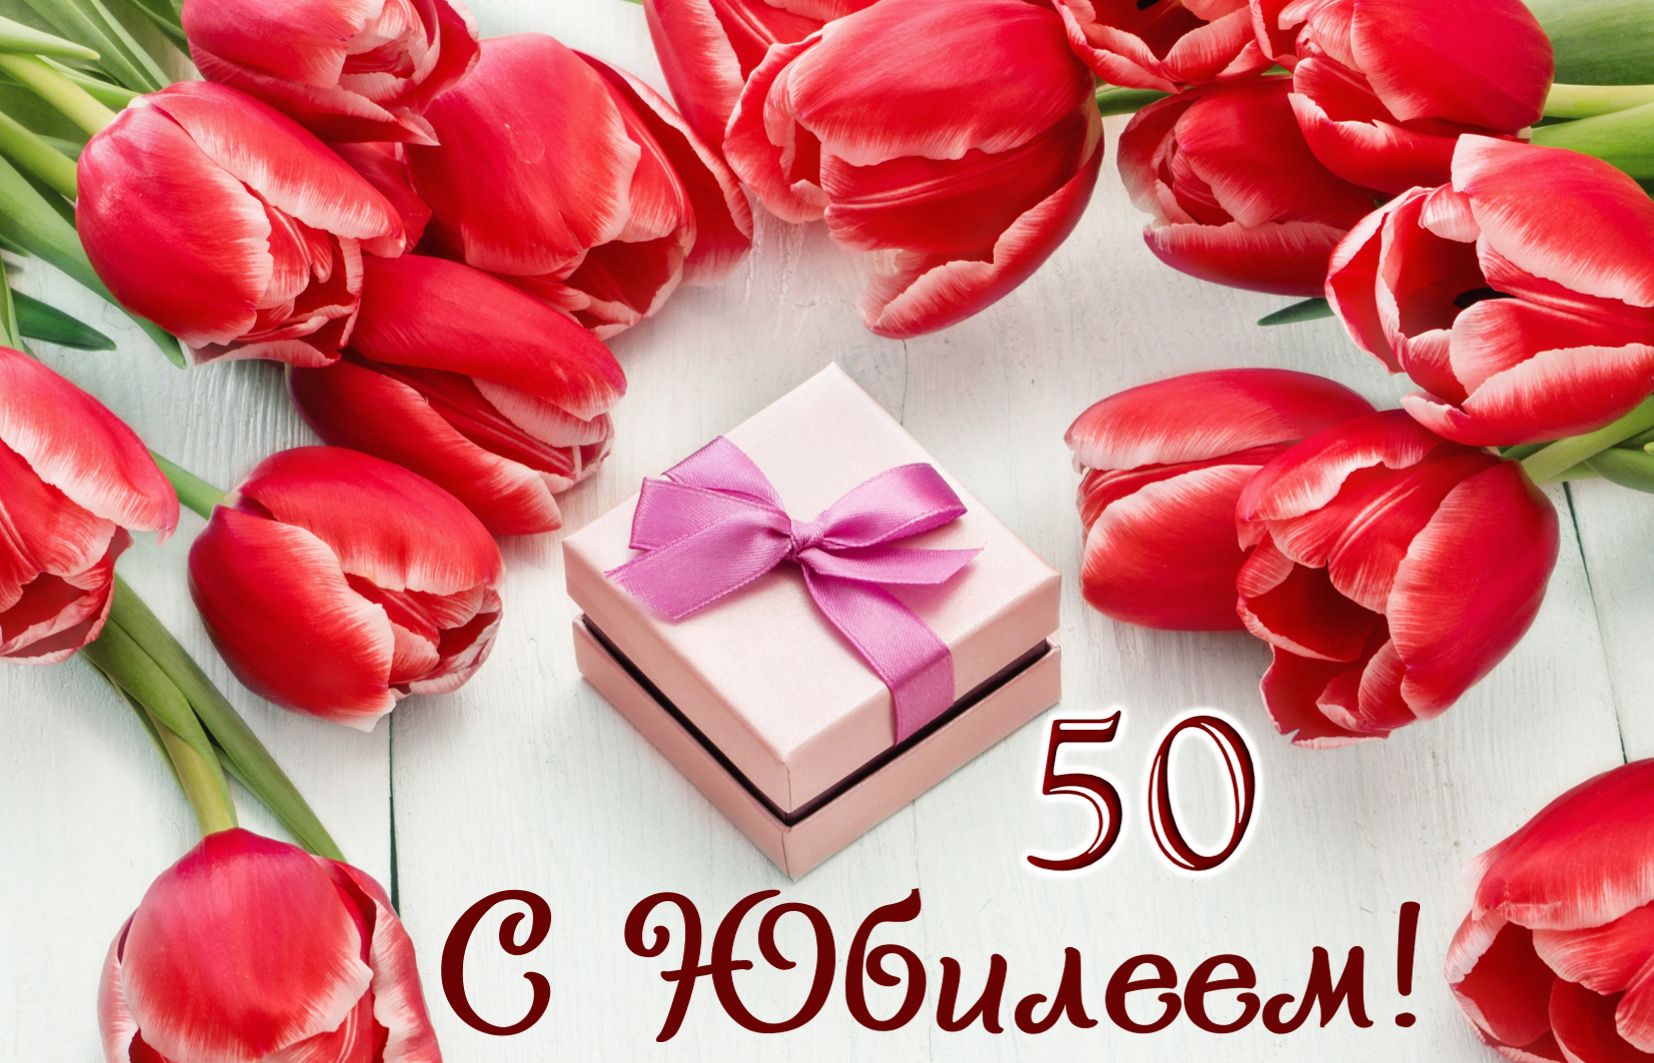 Открытка на юбилей 50 лет - подарок в оформлении из тюльпанов